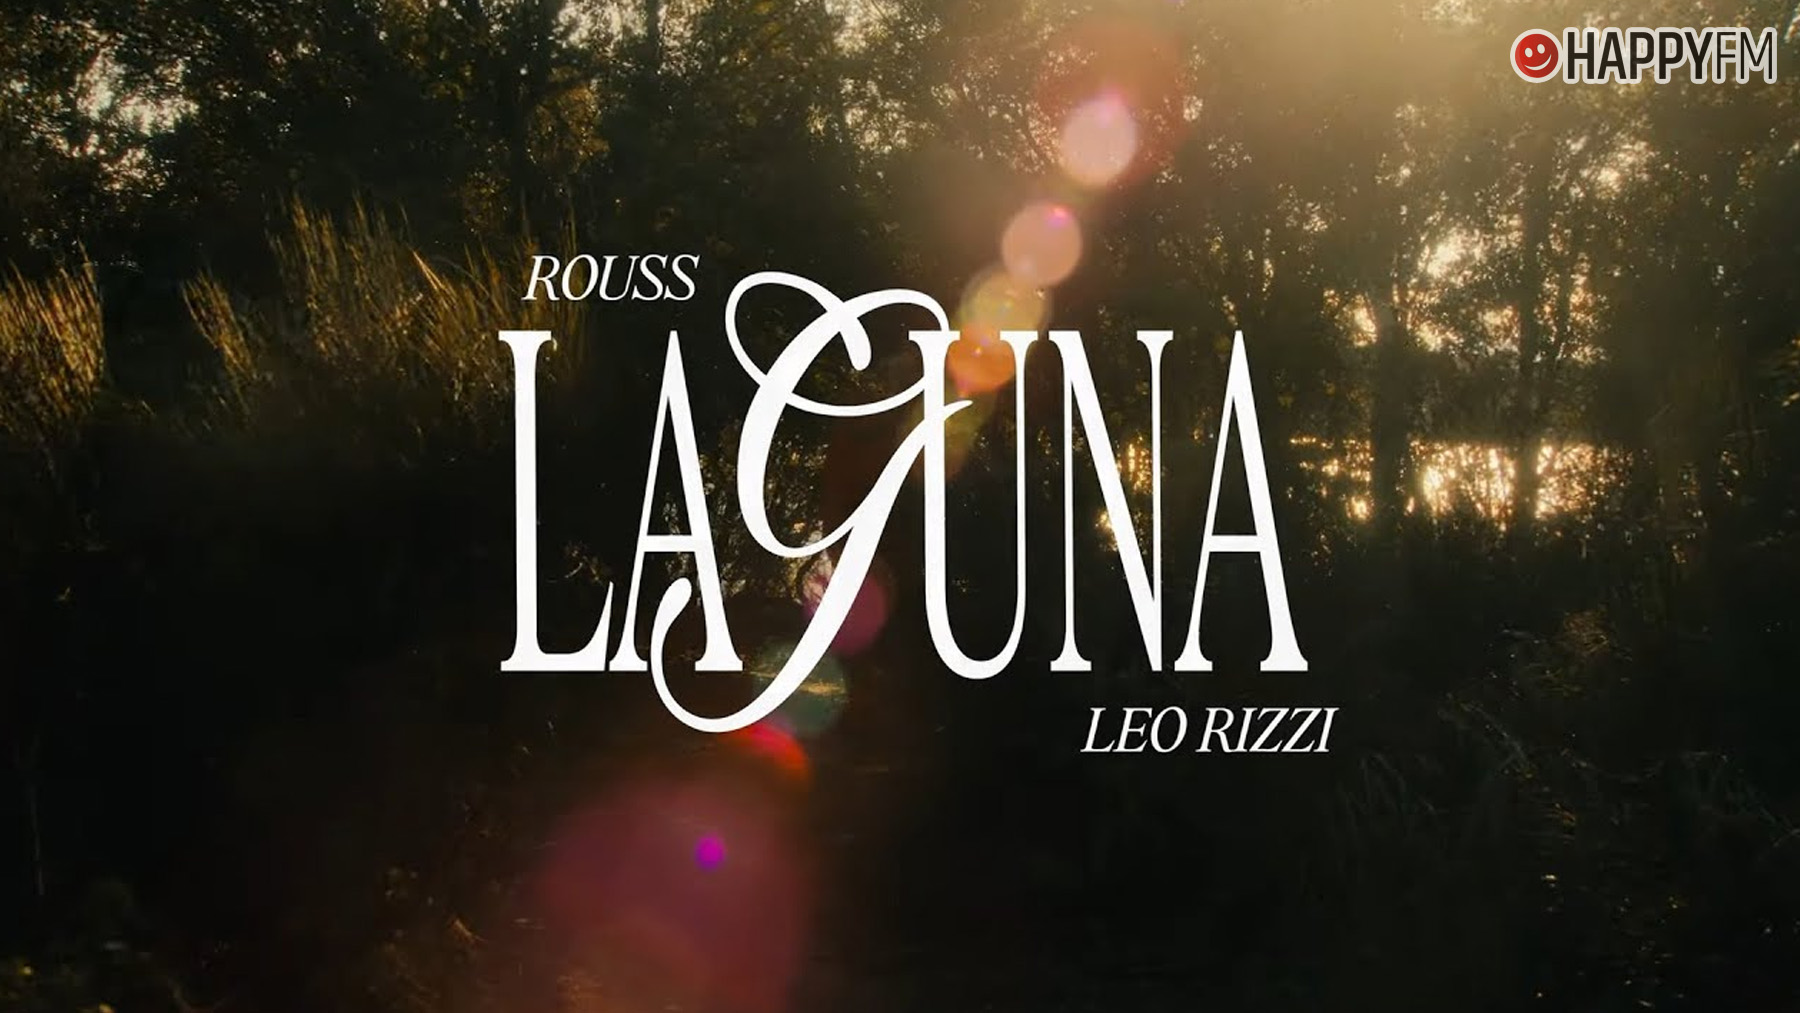 ‘Laguna’, de Rouss y Leo Rizzi: letra y vídeo